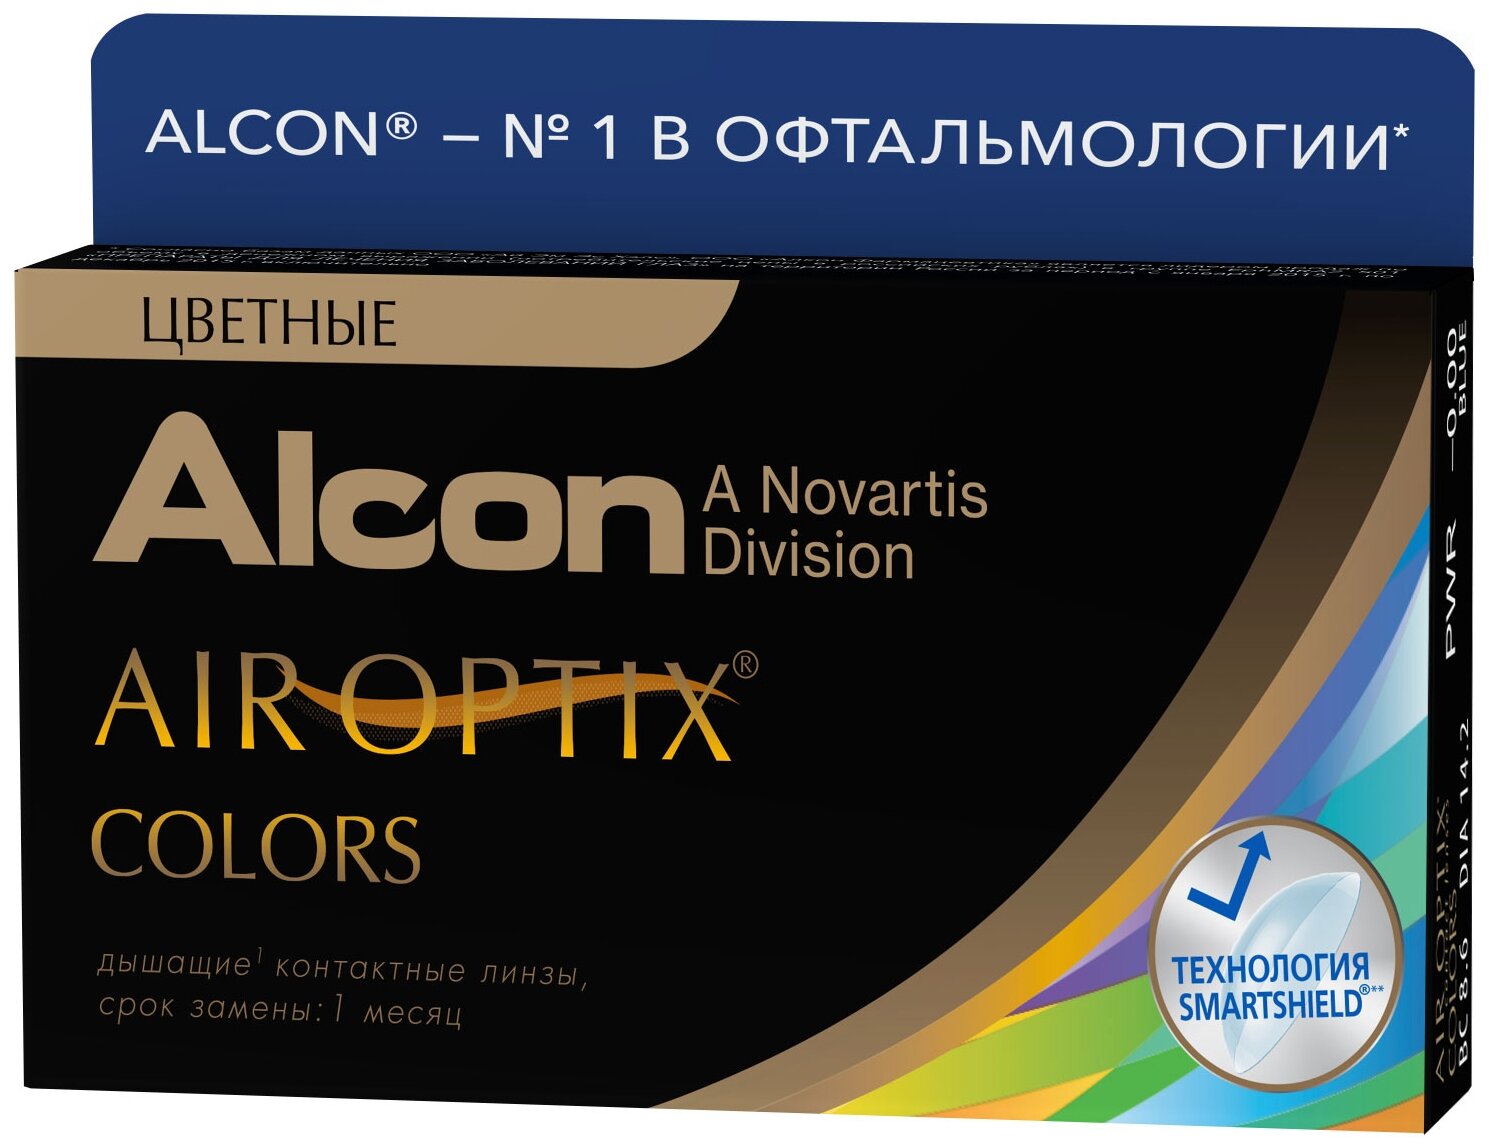 Air Optix (Alcon) Colors, 2 шт. - вид материала: силикон-гидрогелевые